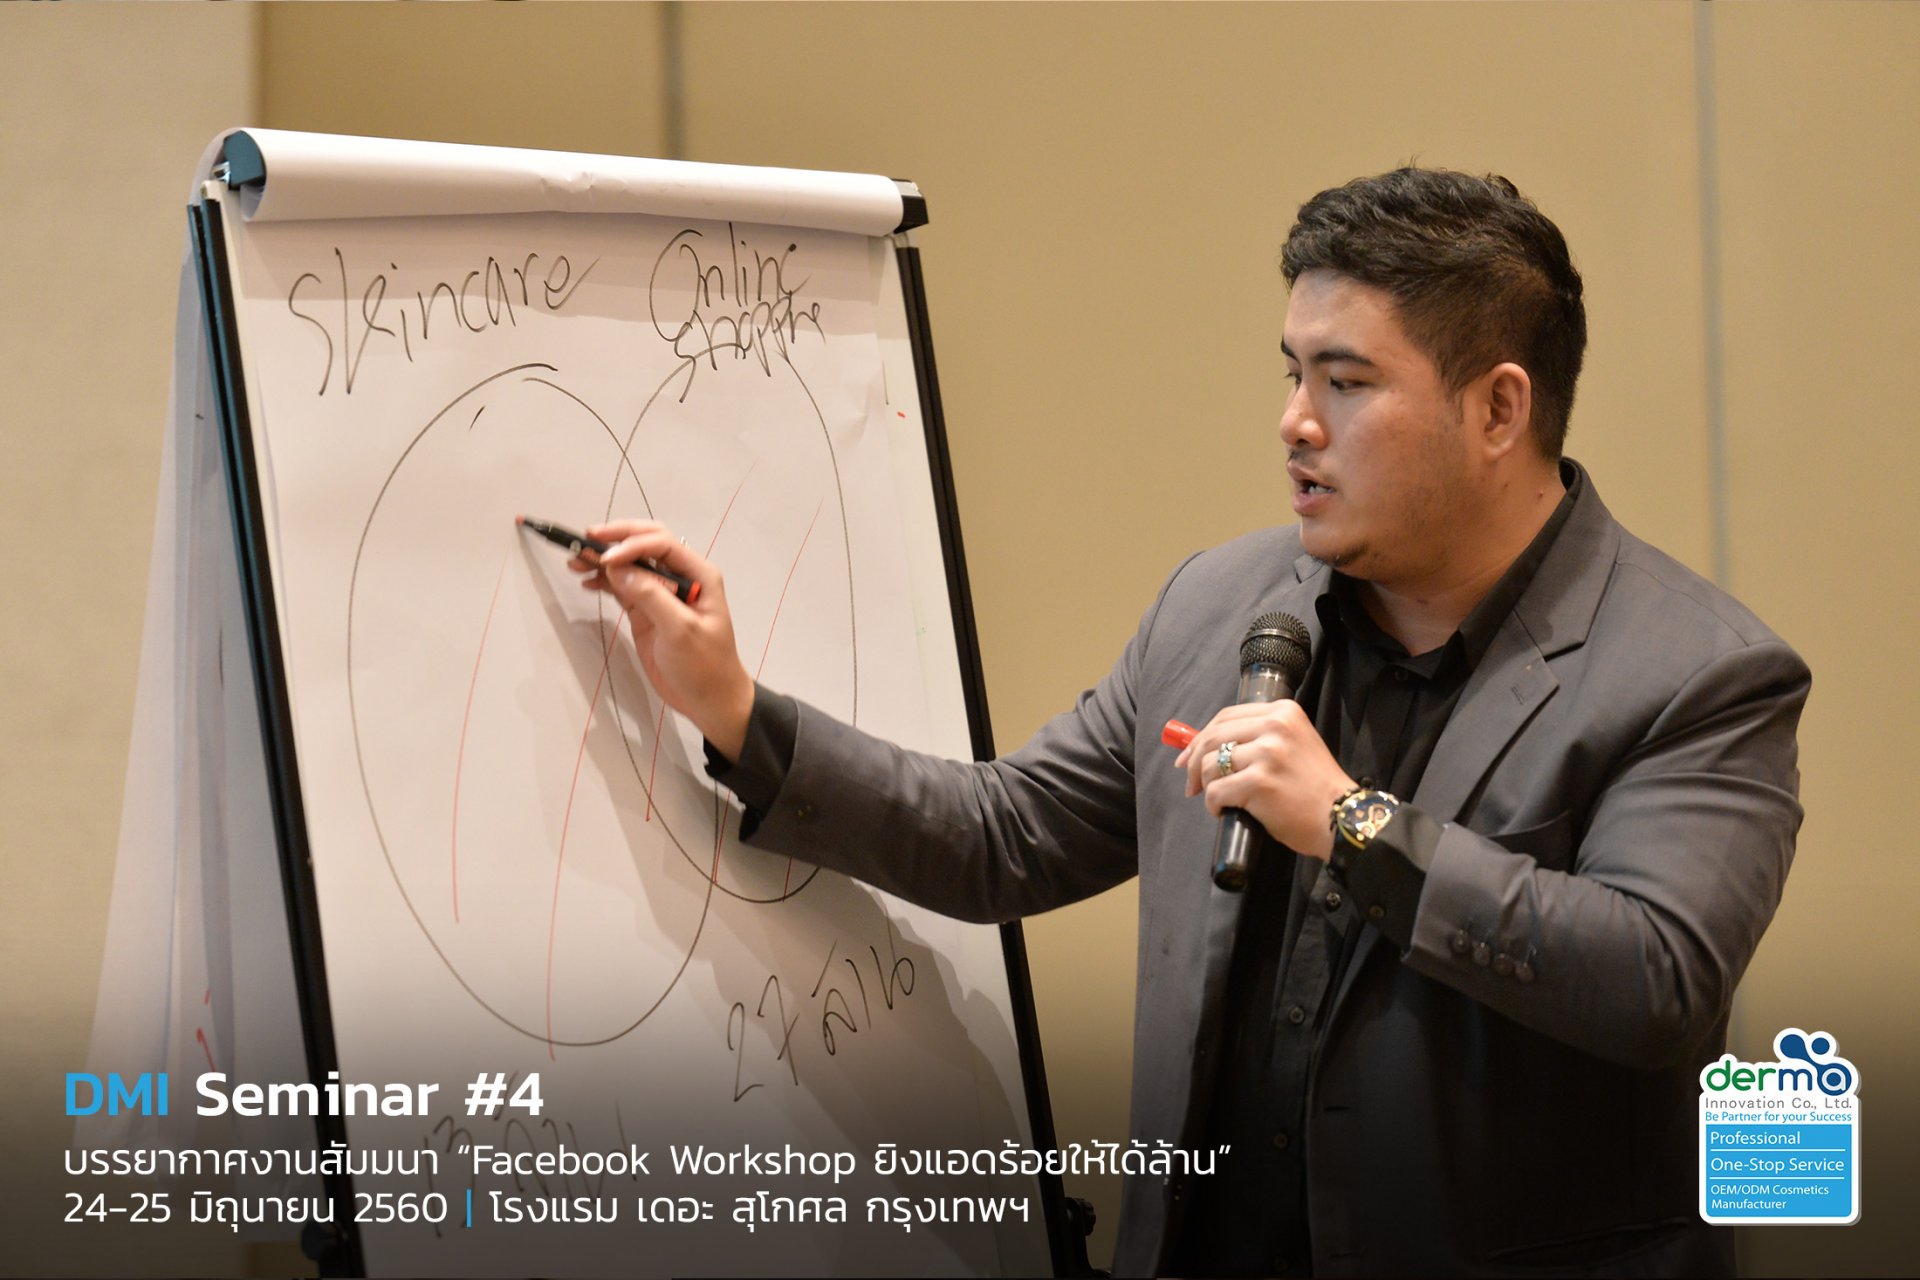 ประมวลภาพสุดประทับใจในงาน DMI Seminar #4 "Facebook Workshop ยิงแอดร้อยให้ได้ล้าน"